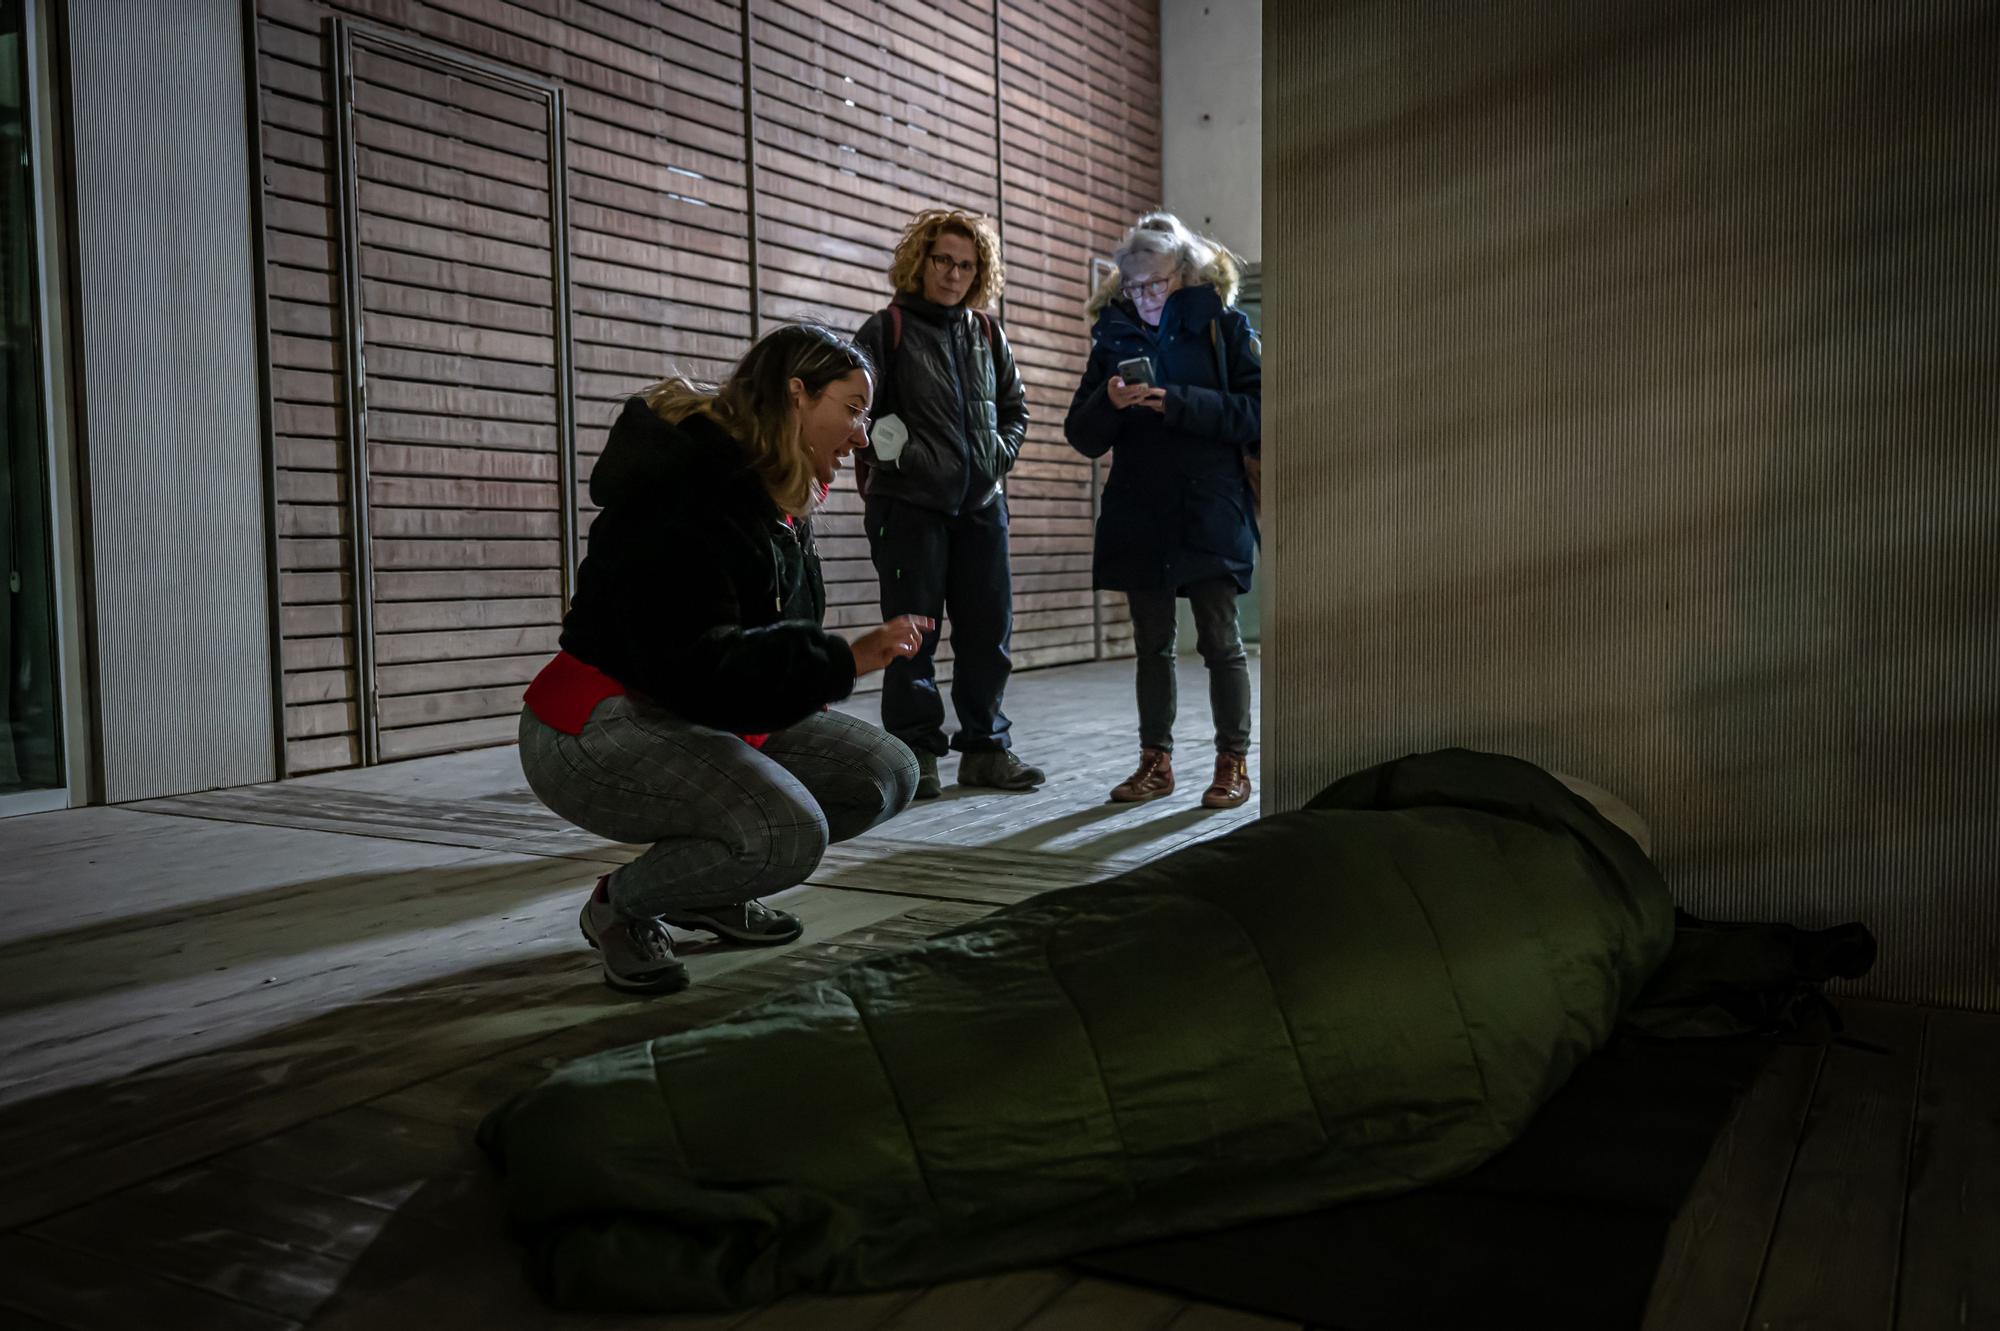 En la operación frío de Barcelona, El Periódico acompaña un equipo de educadores sociales que convencen a las personas sin hogar para refugiarse en las 262 camas extras habilitadas este fin de semana